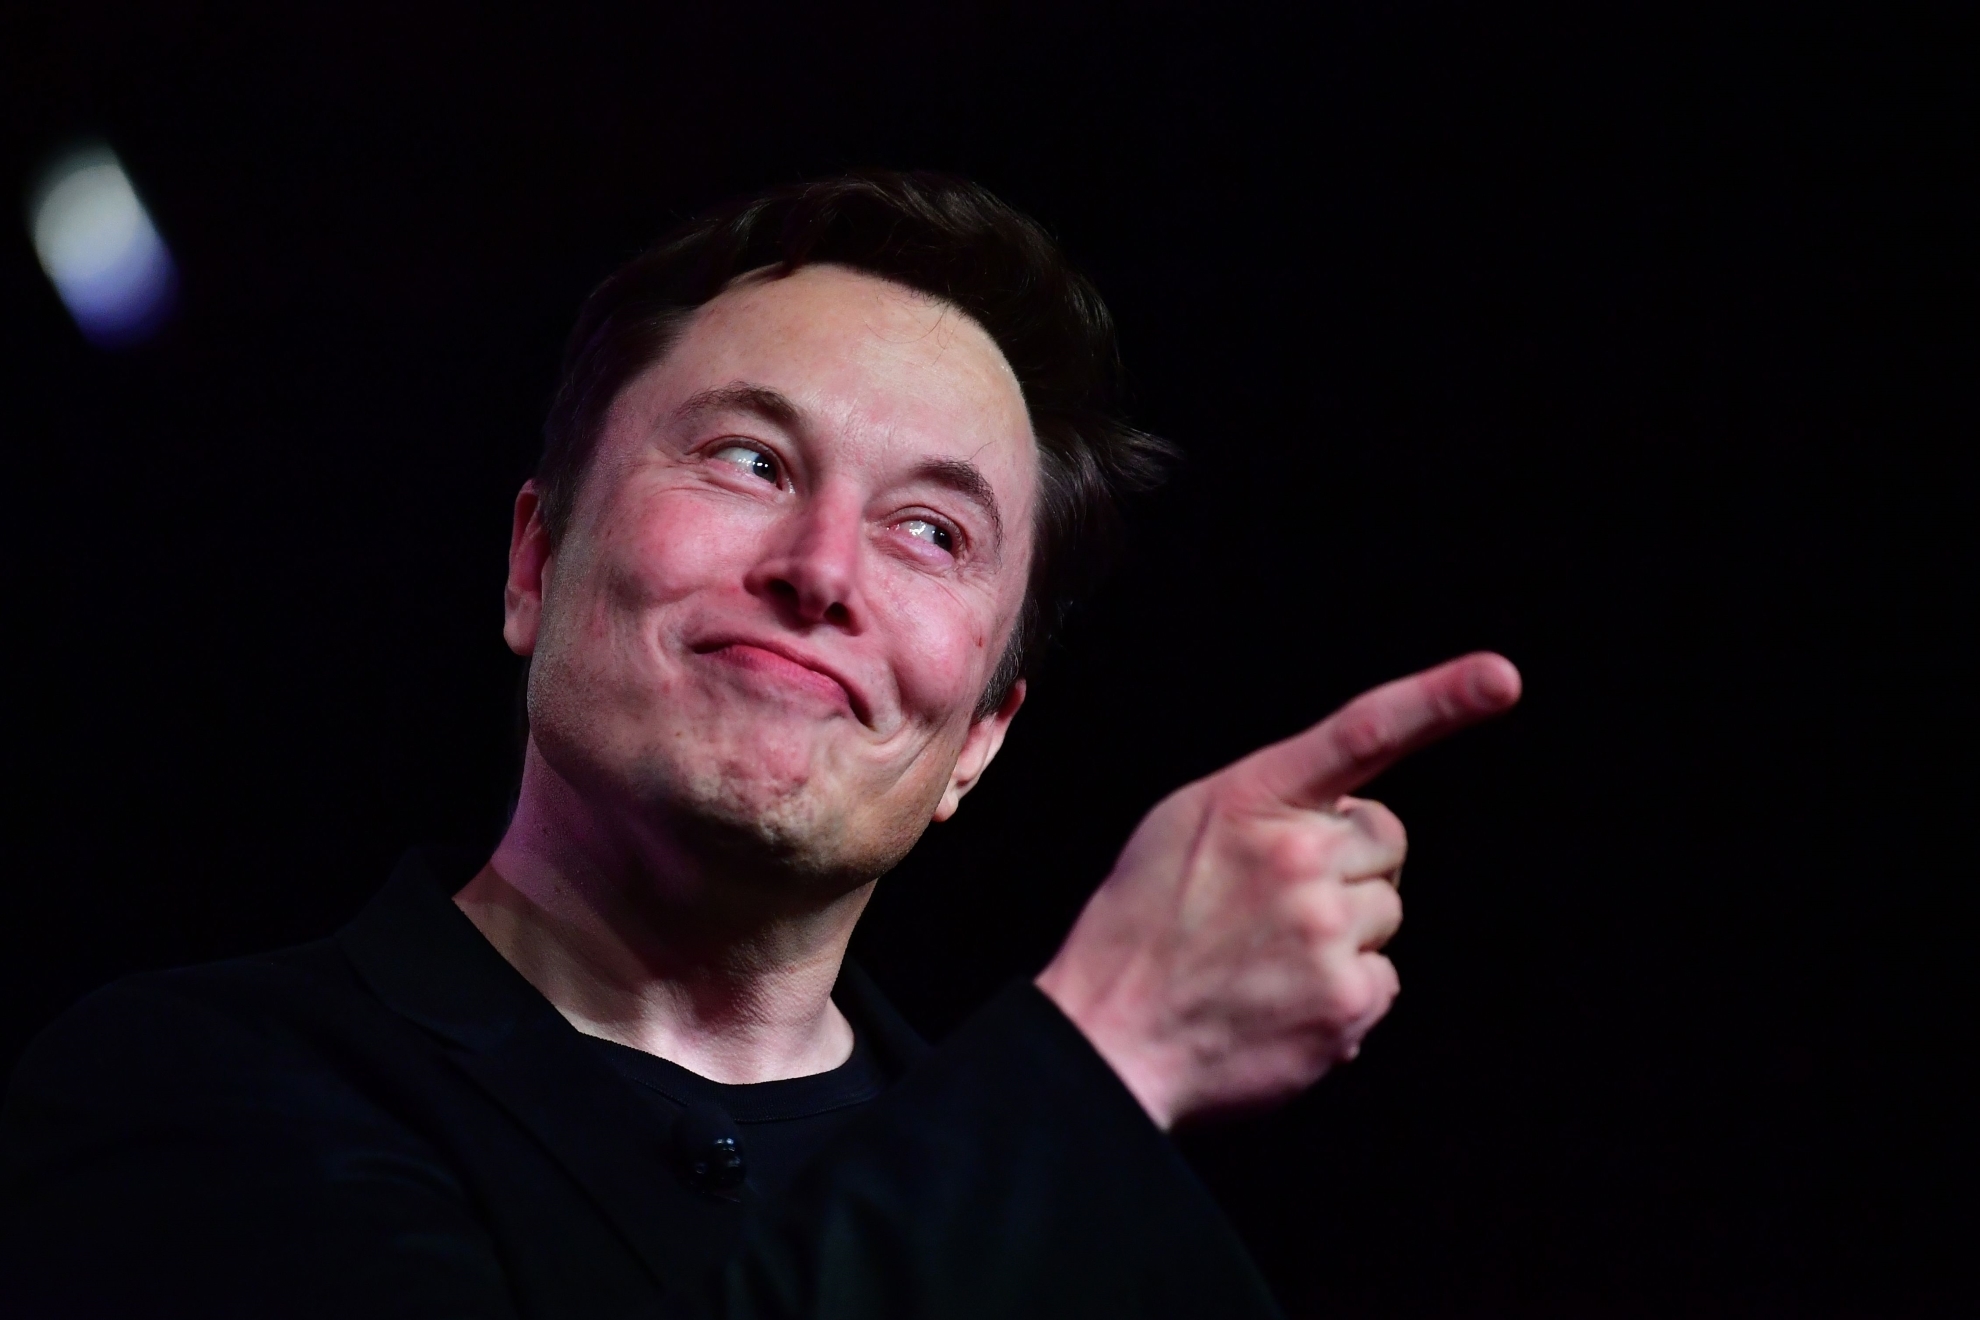 Elon Musk seala con el dedo